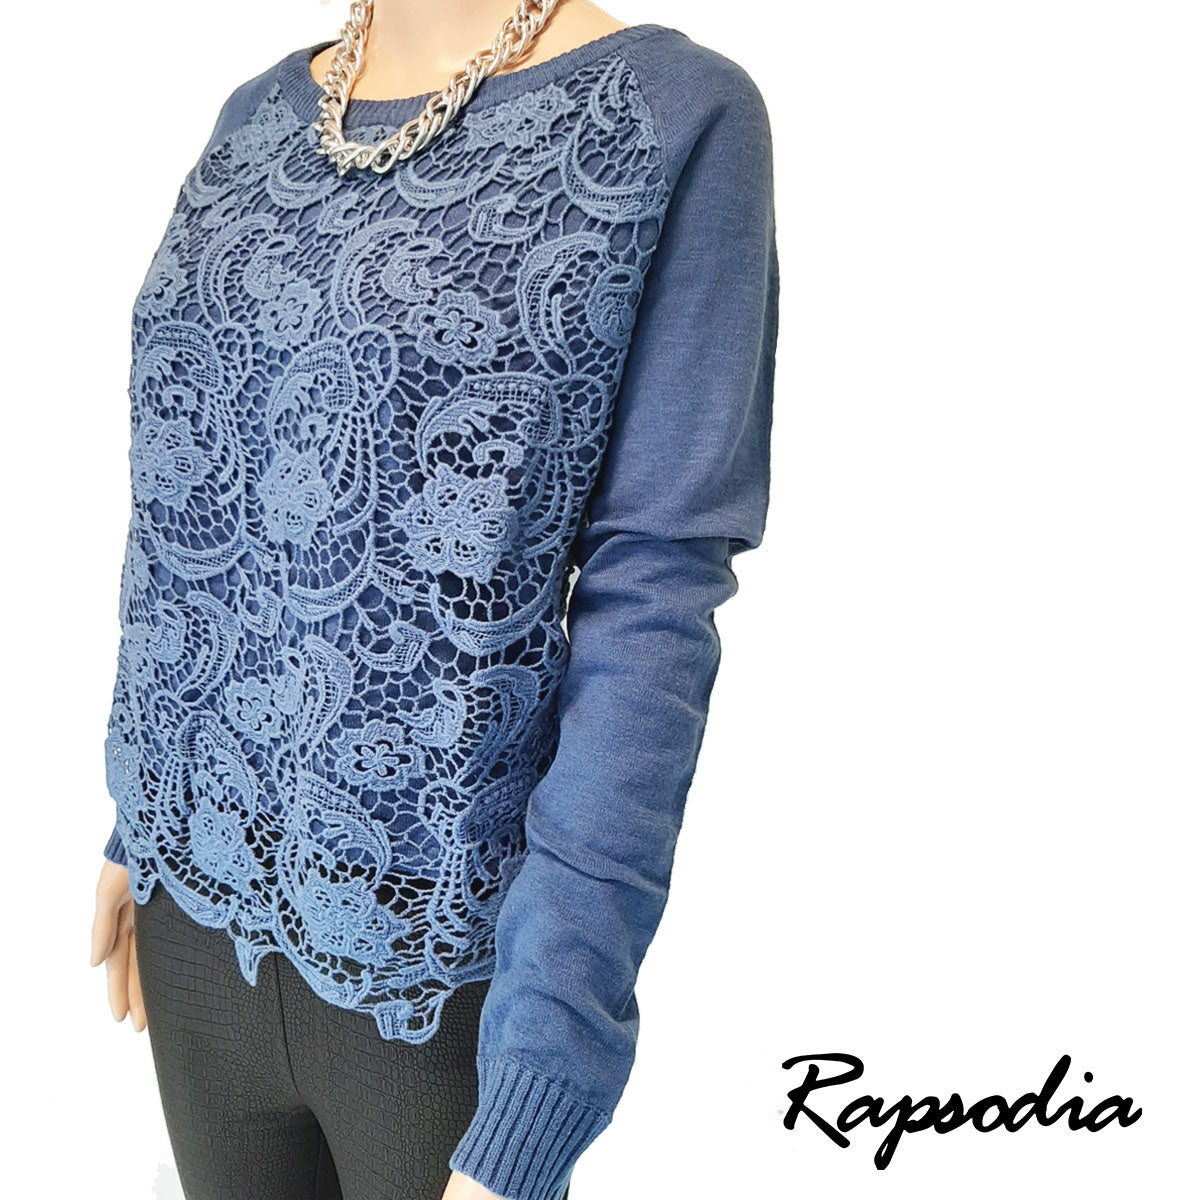 Sweater Rapsodia Delmonico Azul